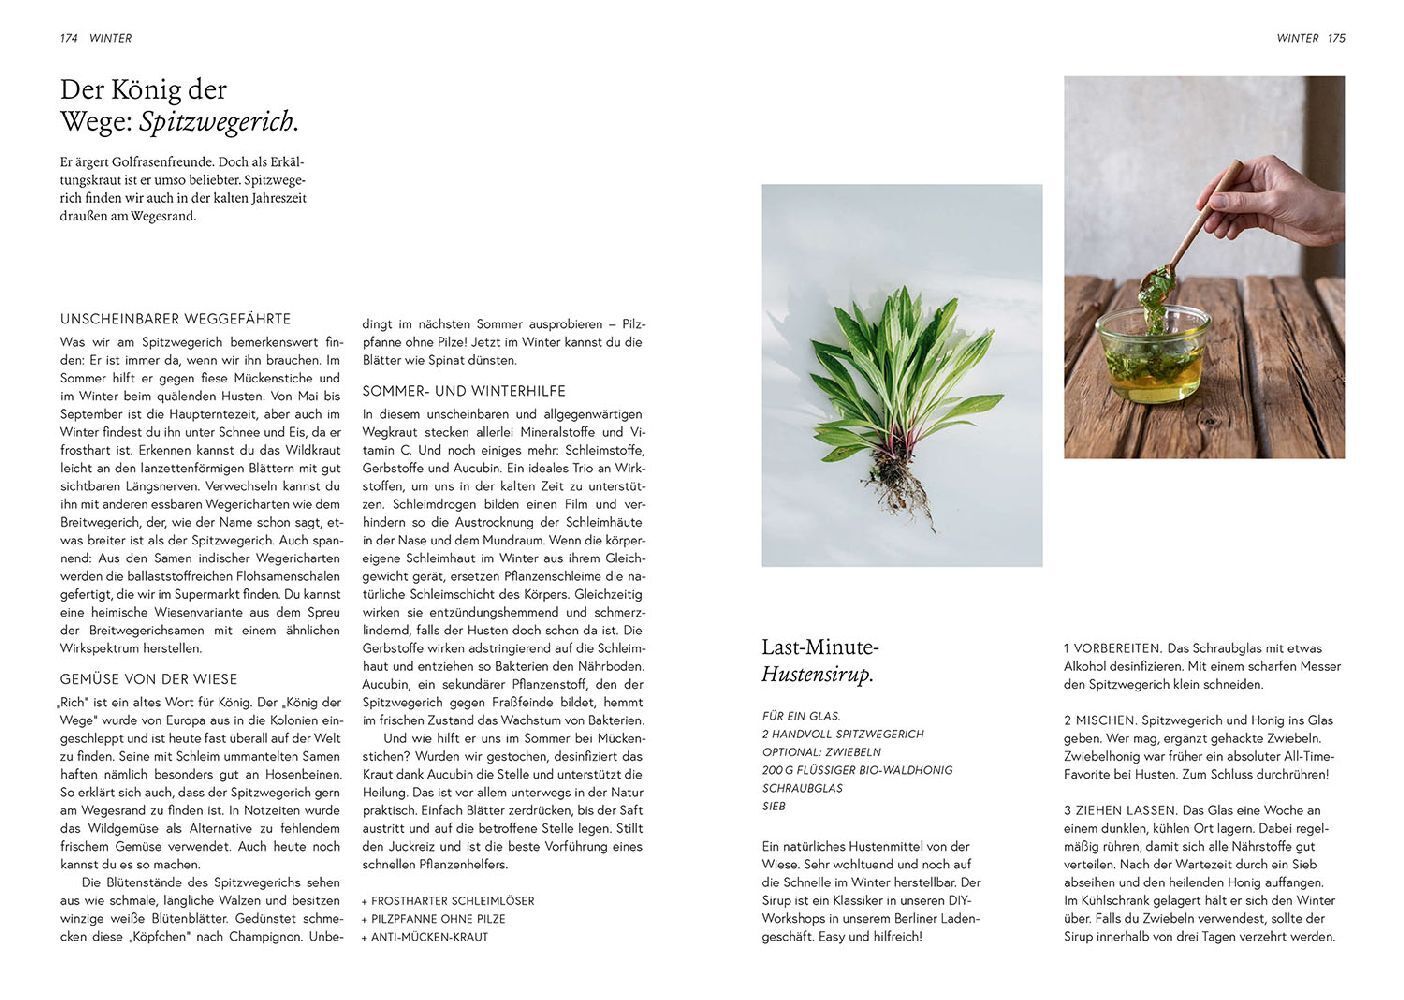 Bild: 9783440173381 | Kruut - Wildpflanzen im Alltag | Annika Krause (u. a.) | Taschenbuch